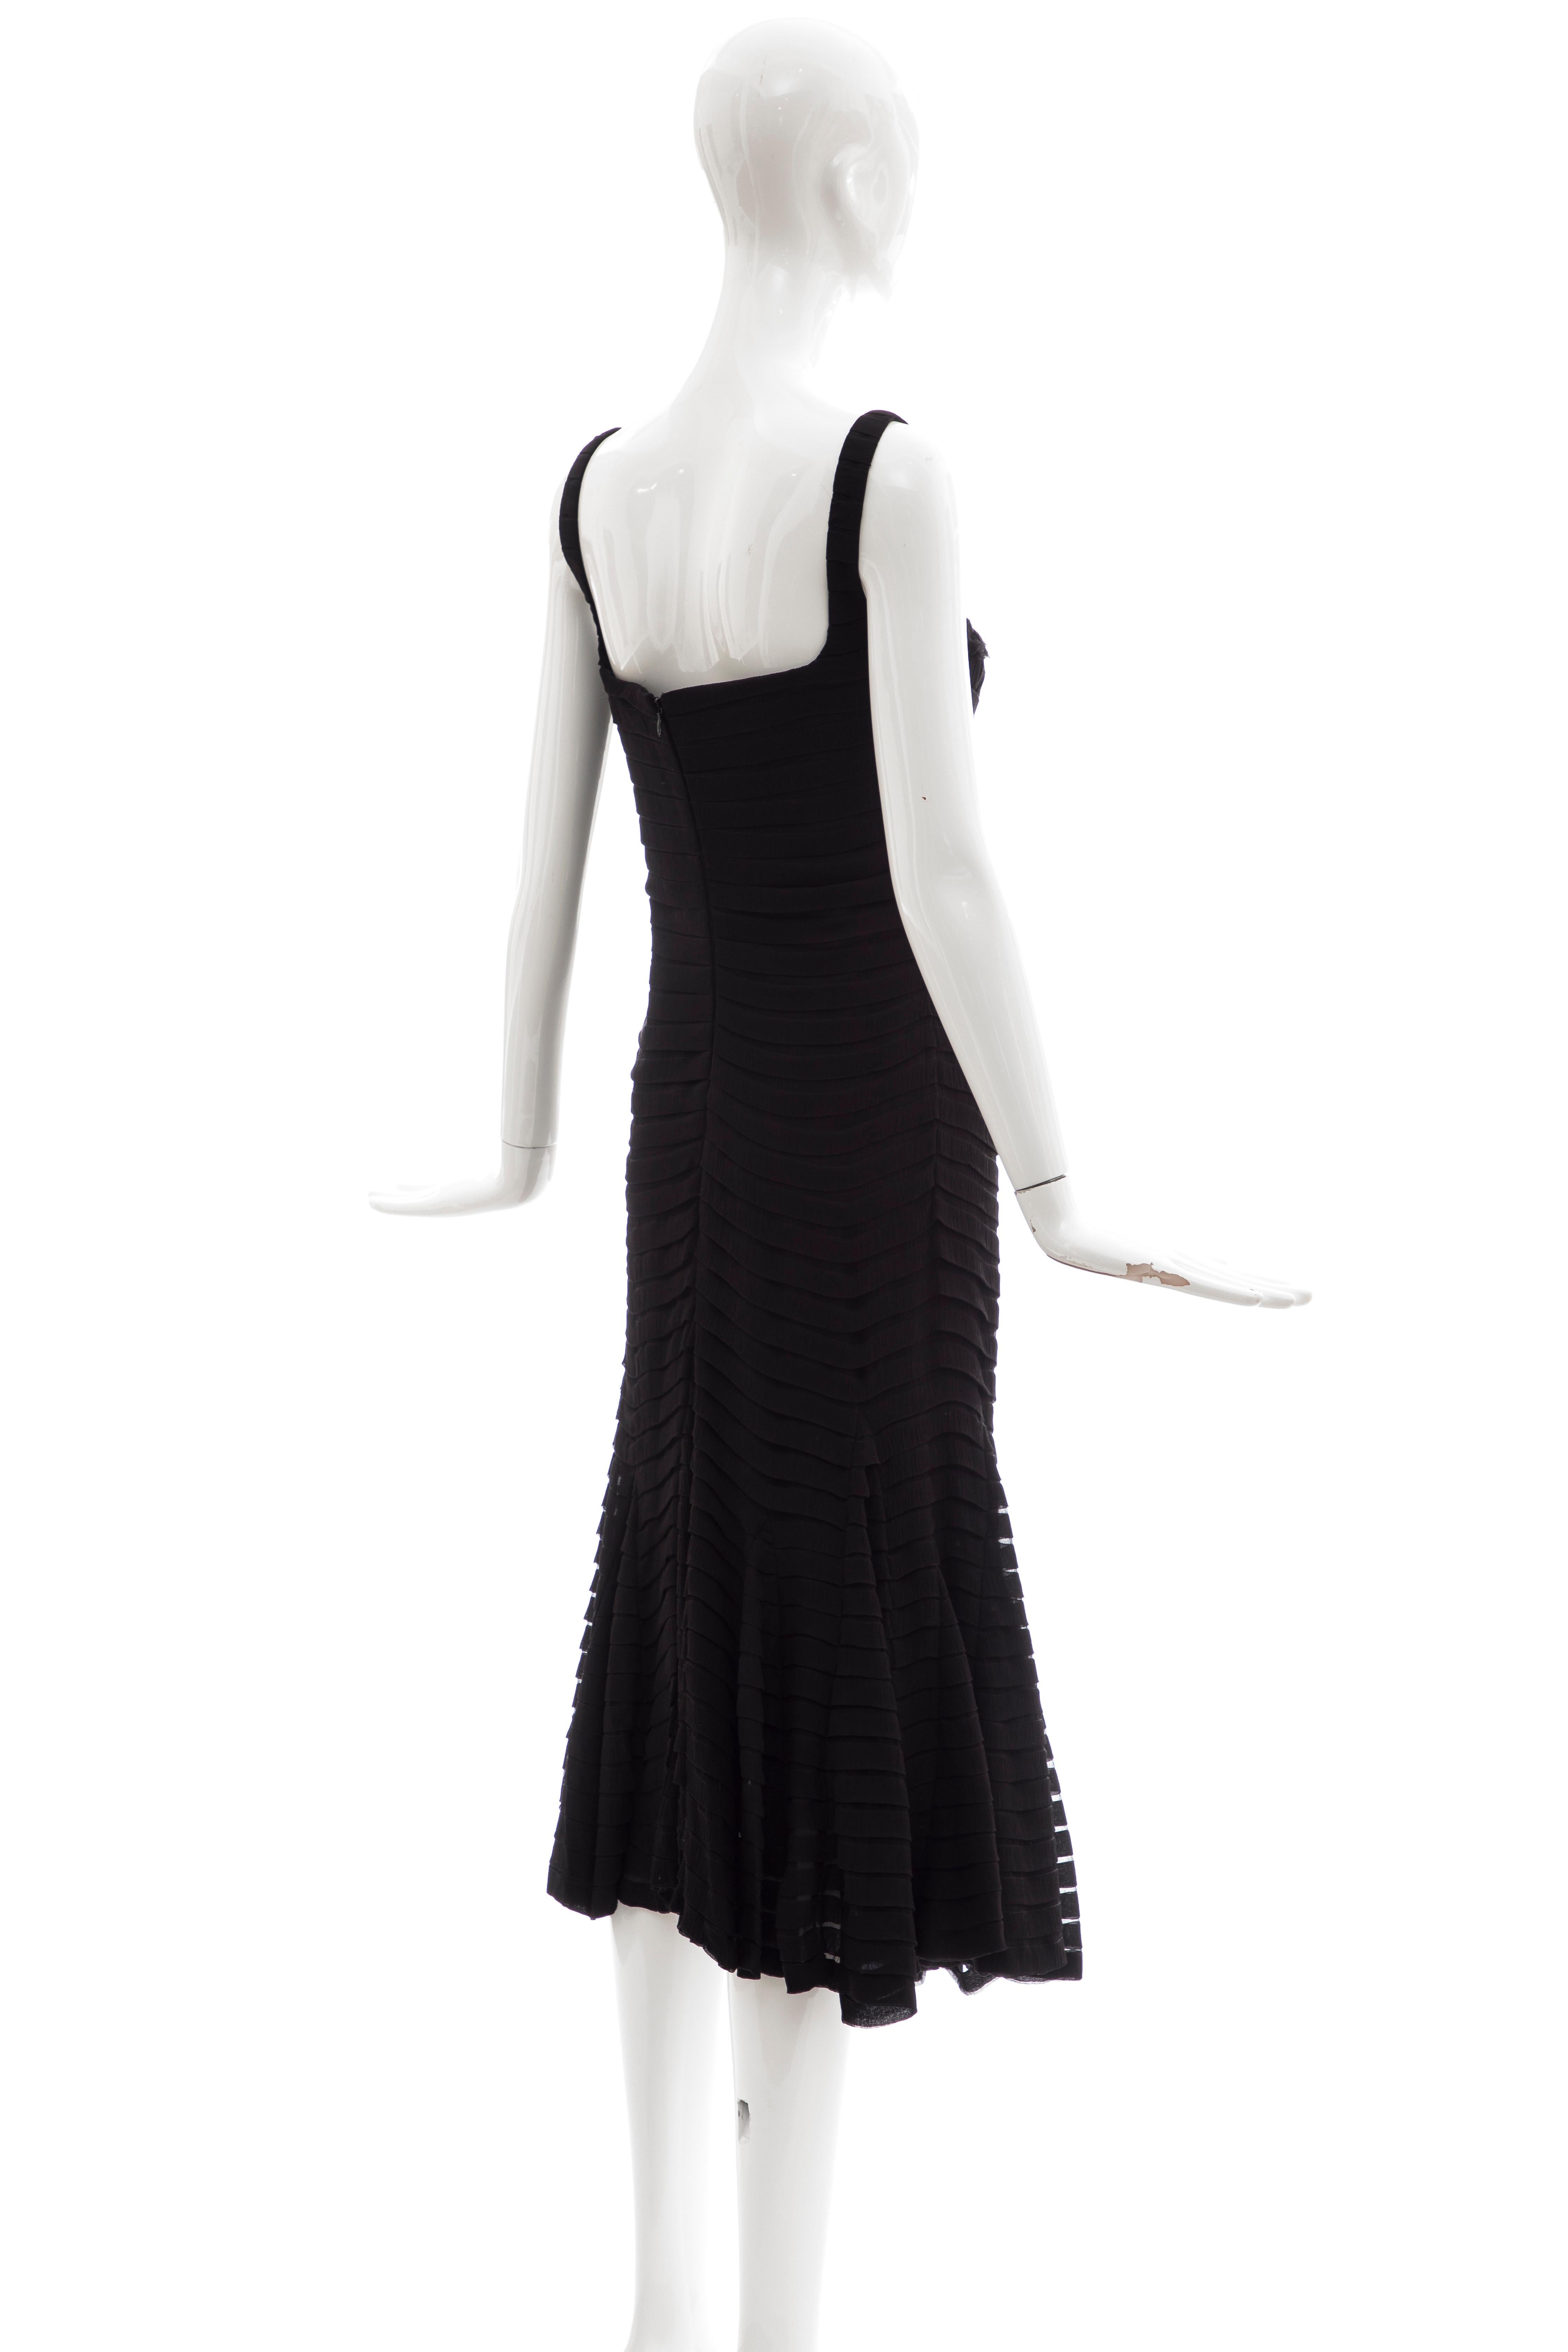 Alexander McQueen Black Silk Chiffon Evening Dress, Fall 2005  For Sale 1